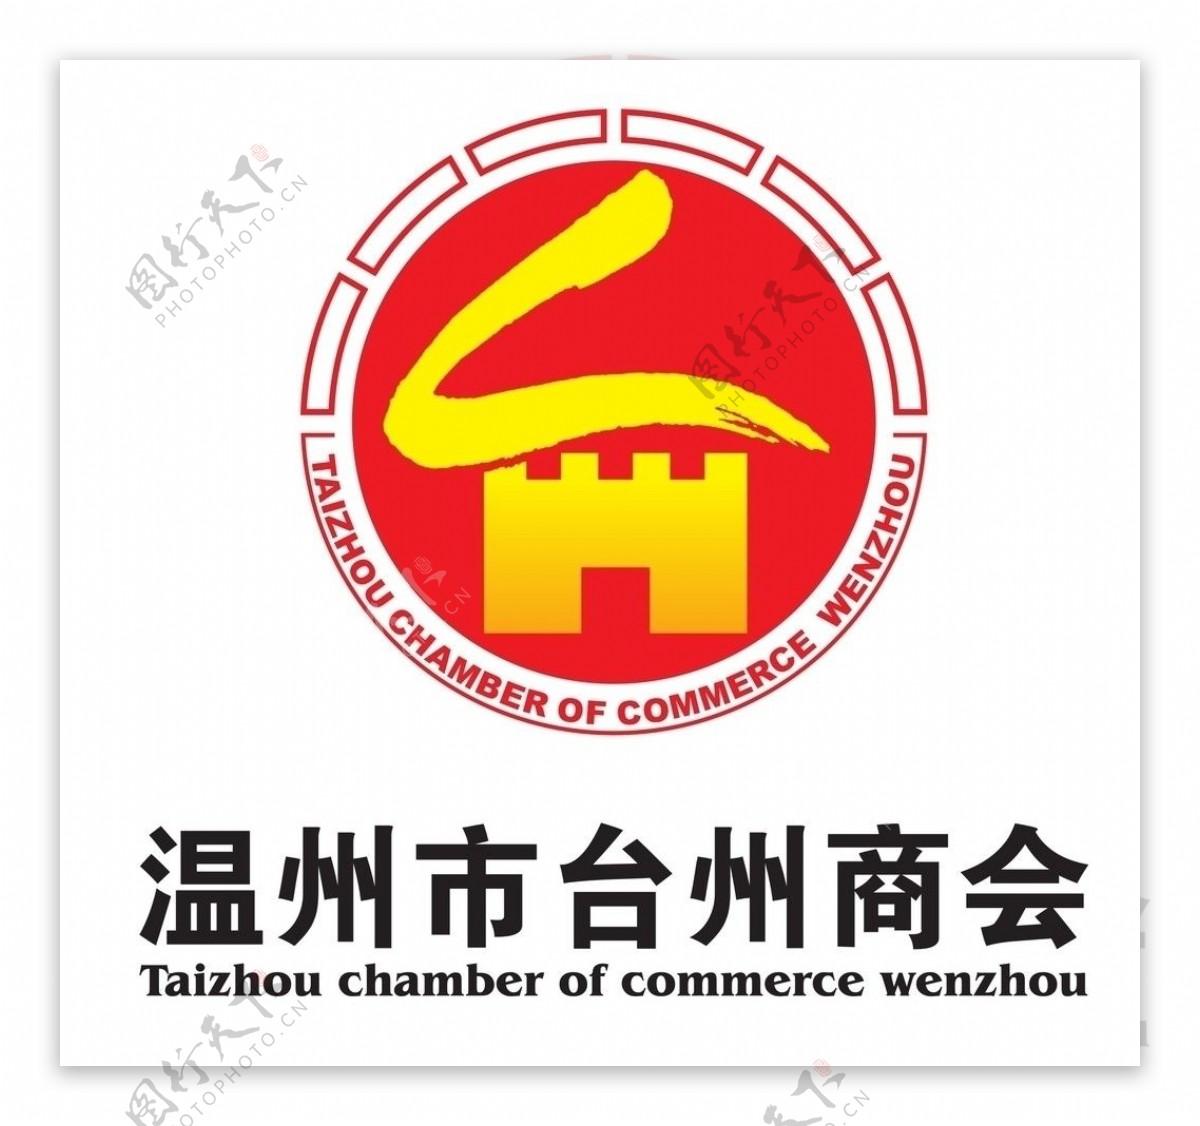 温州市台州商会会徽图片